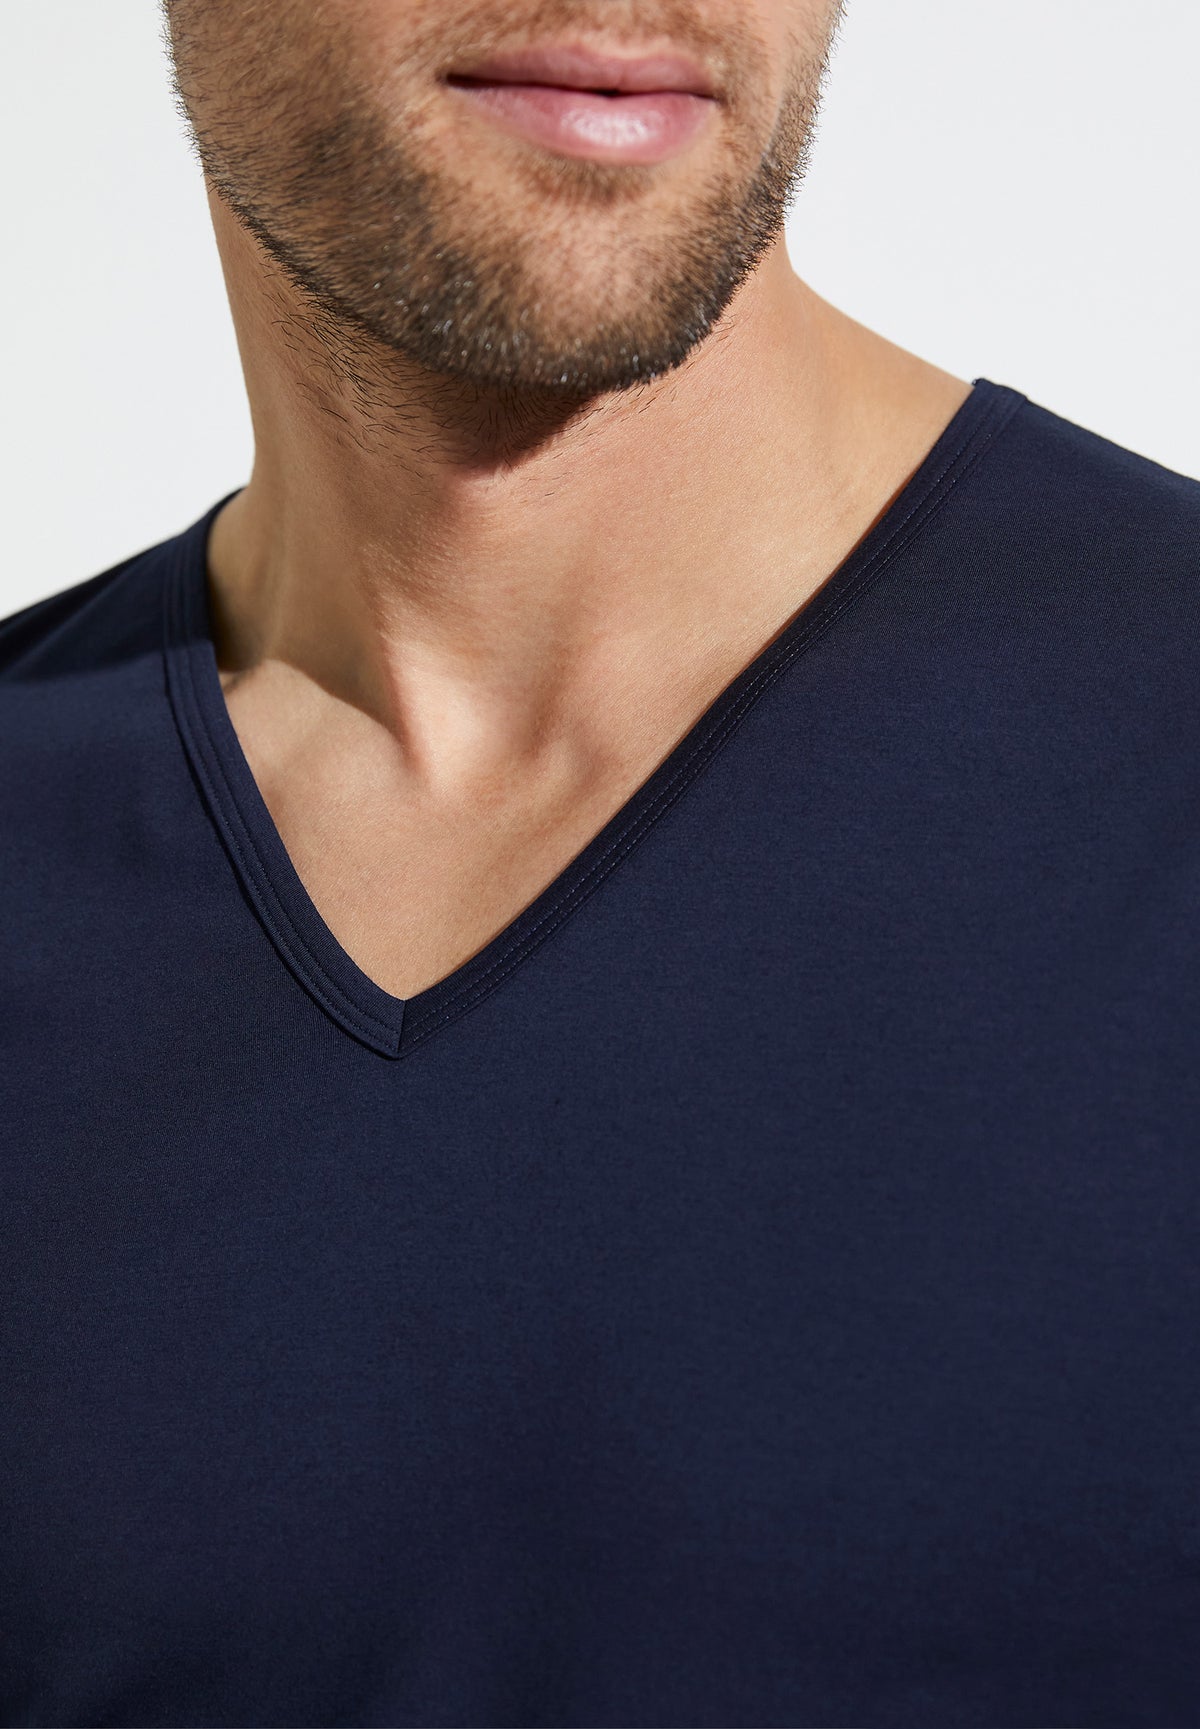 Pure Comfort | T-Shirt kurzarm V-Ausschnitt - navy